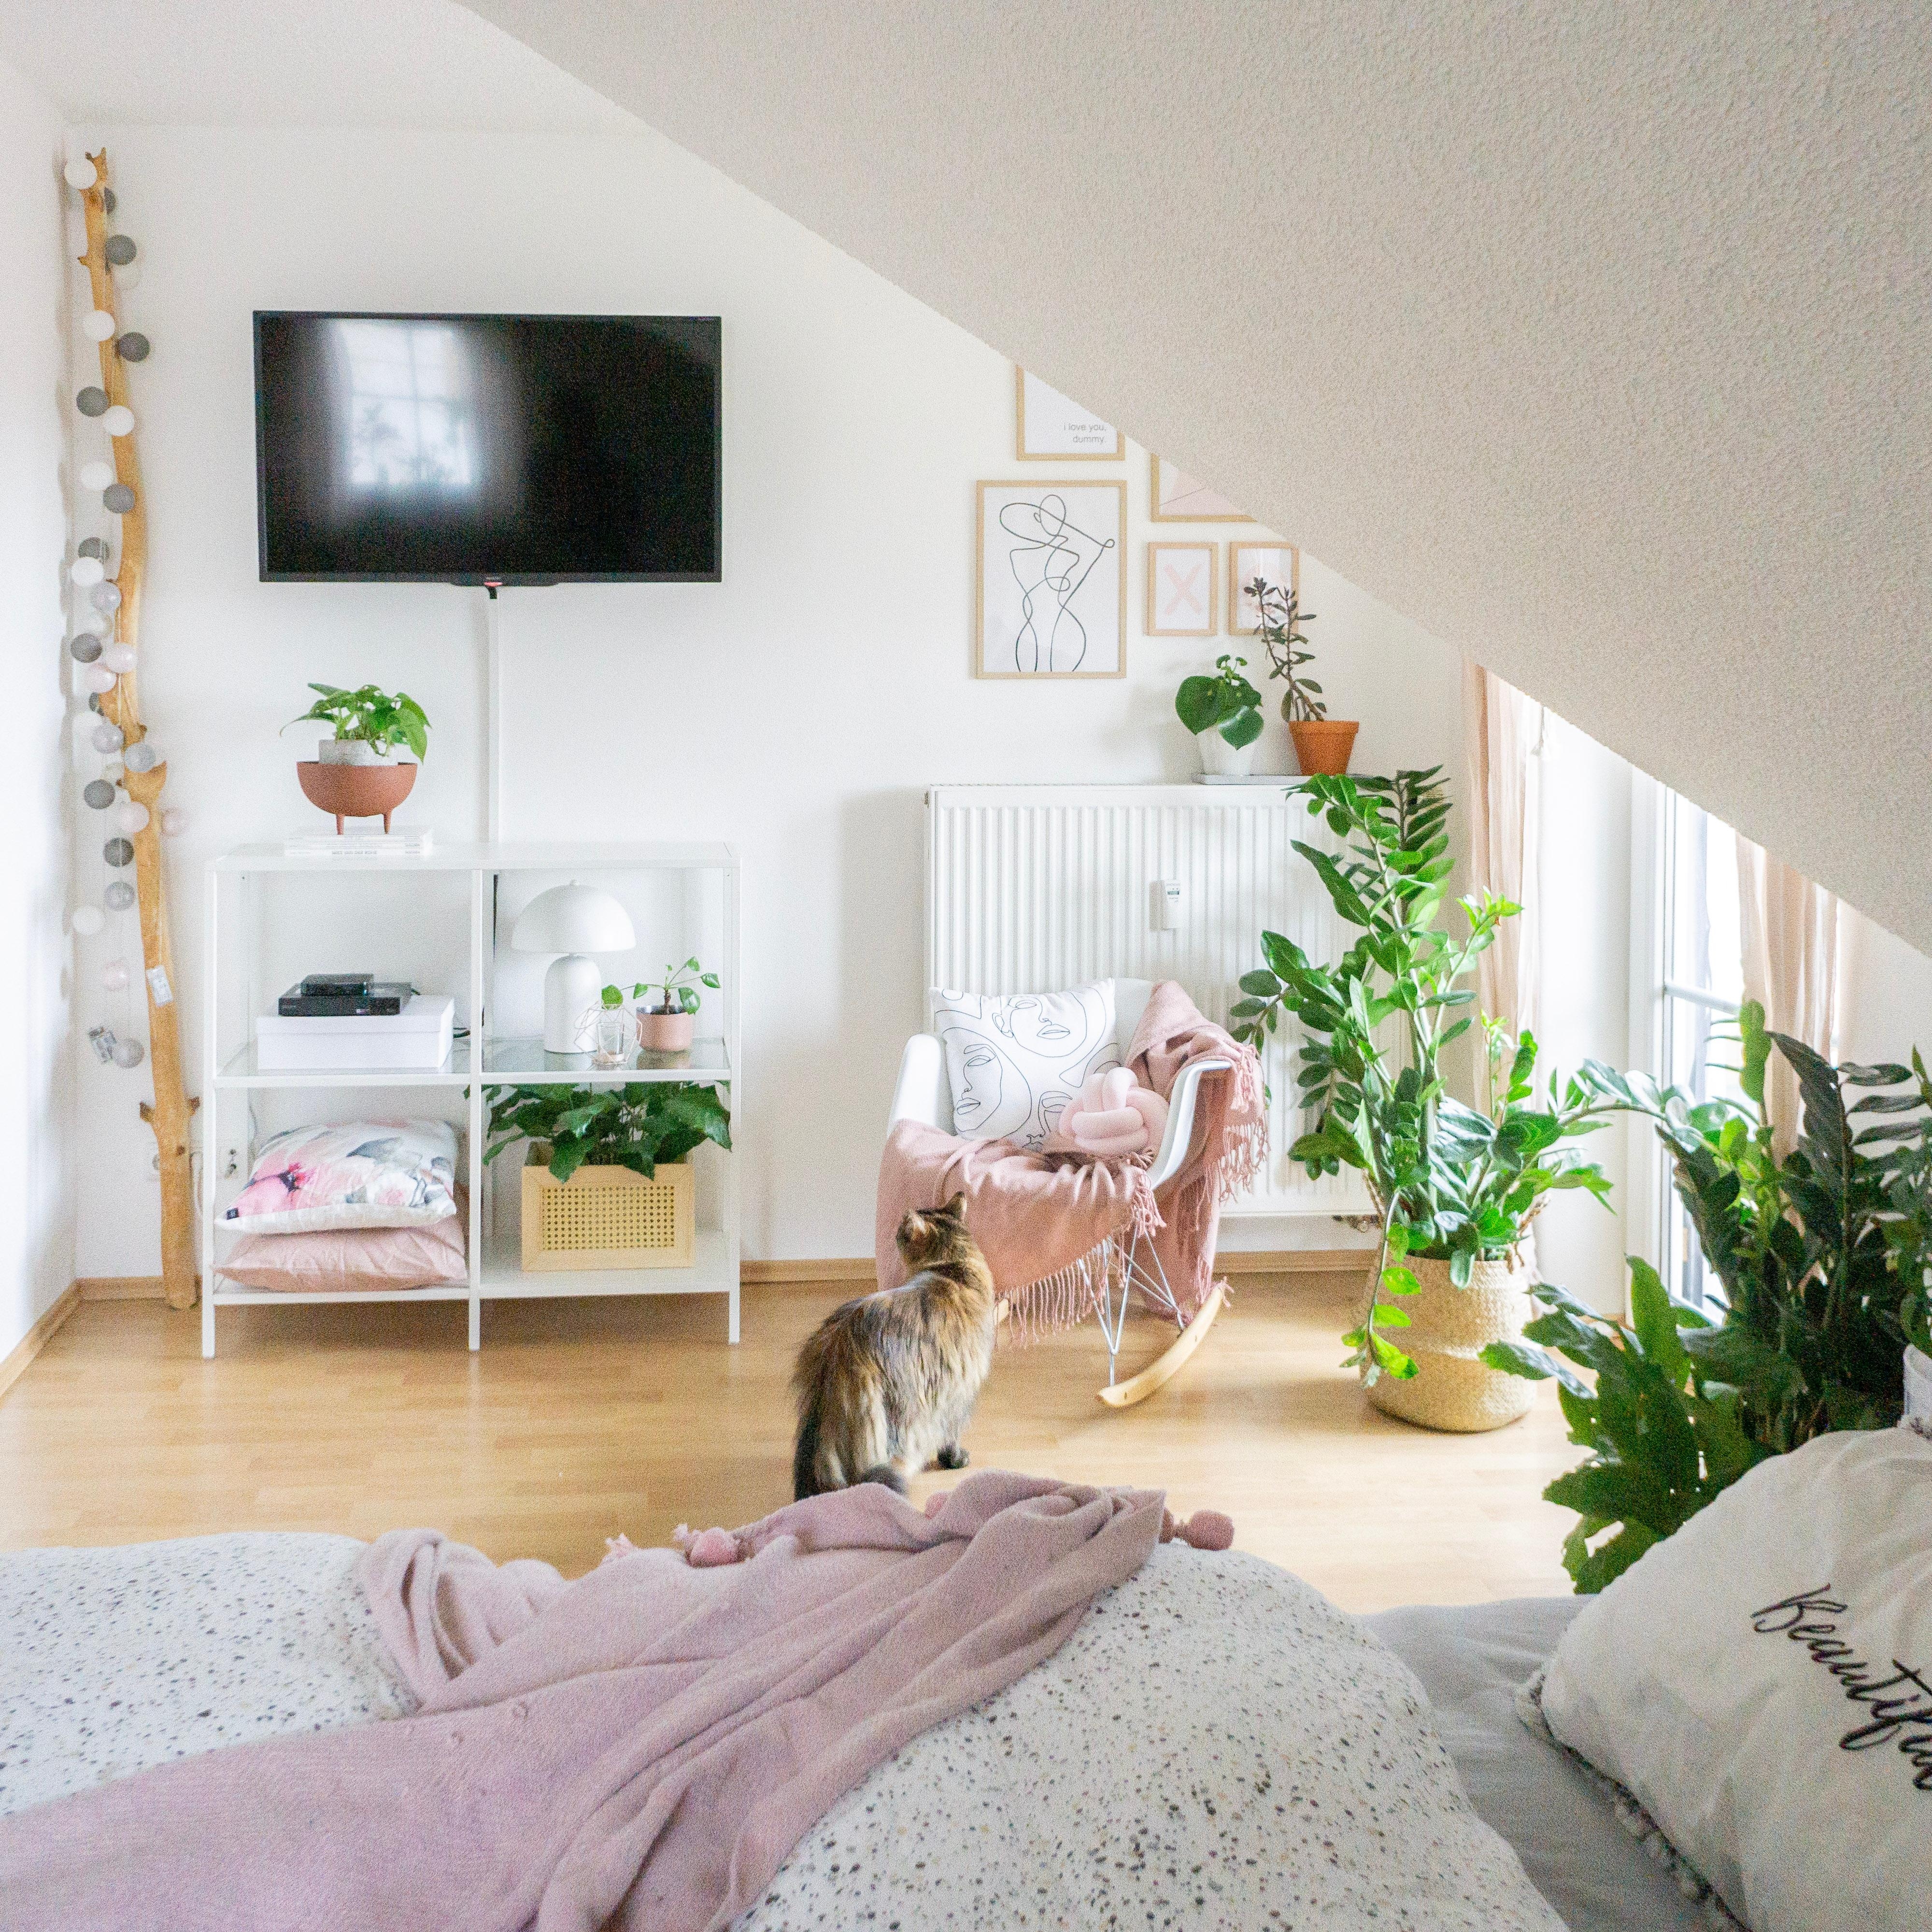 #pflanzenliebe #bedroom #schlafzimmer #interiorjunkie#blog #catmom #catlove #diyliebe #diymöbel #diy